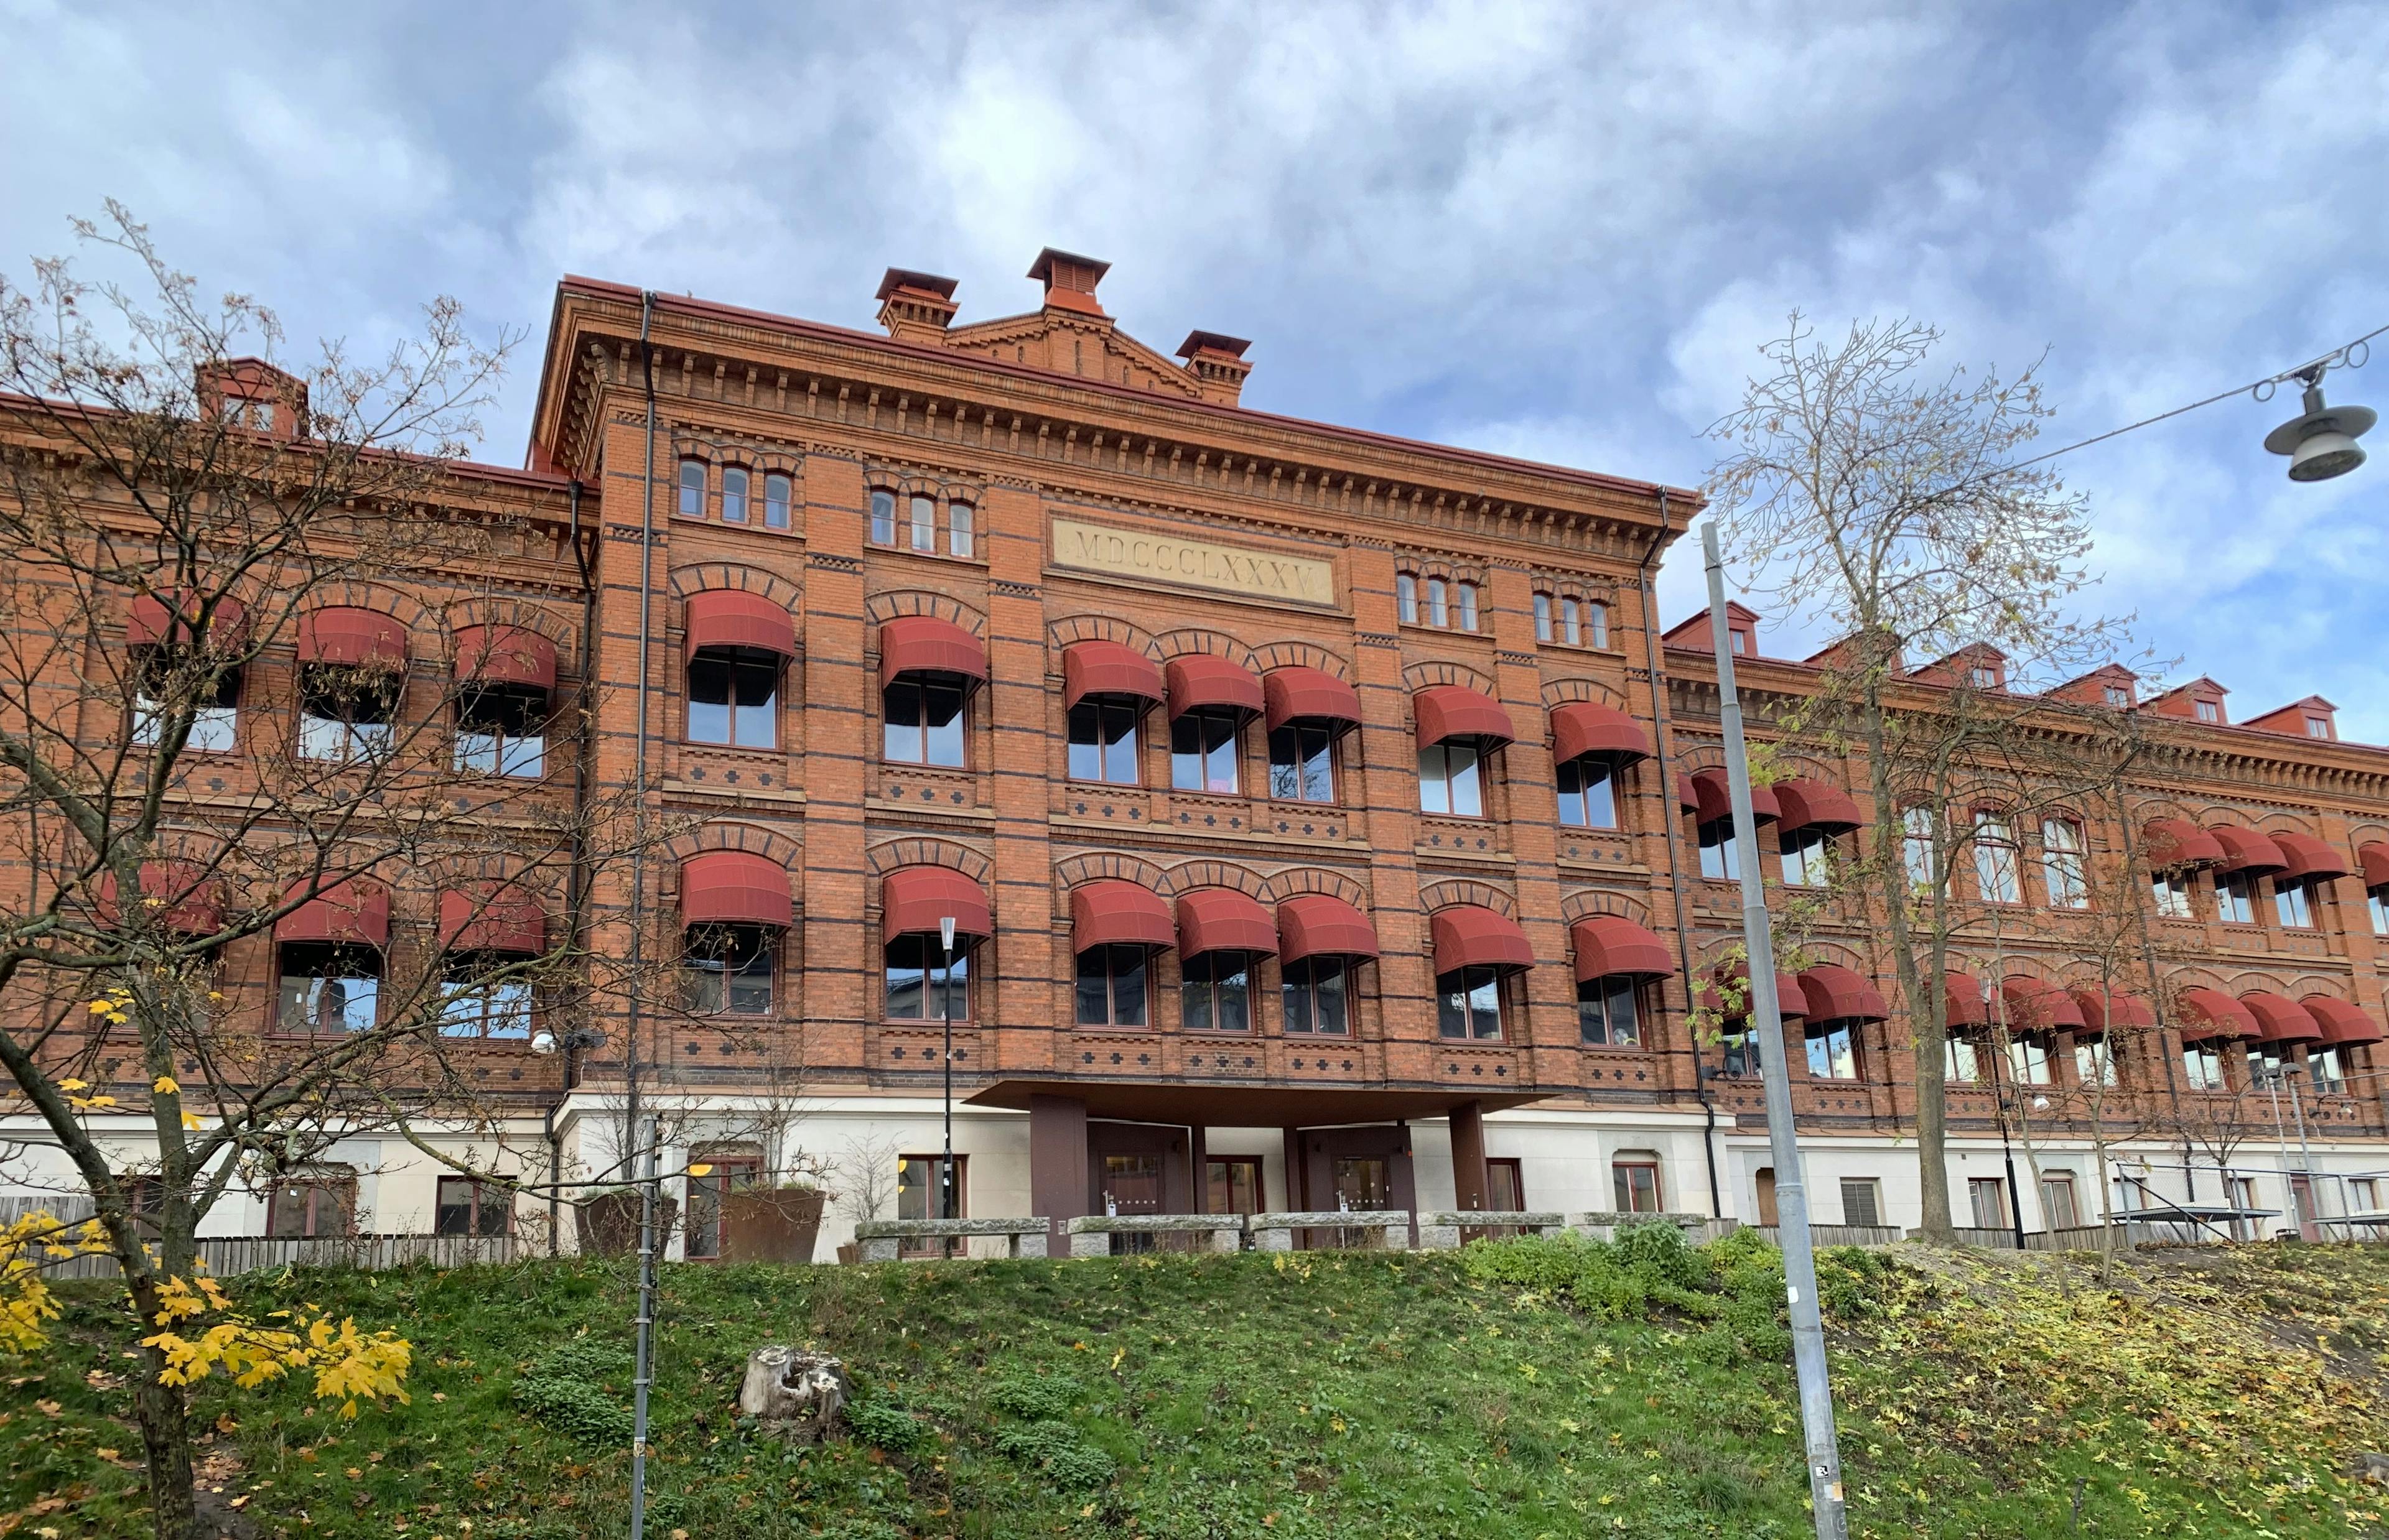 Viktor Rydberg Gymnasium Odenplans skolbyggnaden från Frejgatan